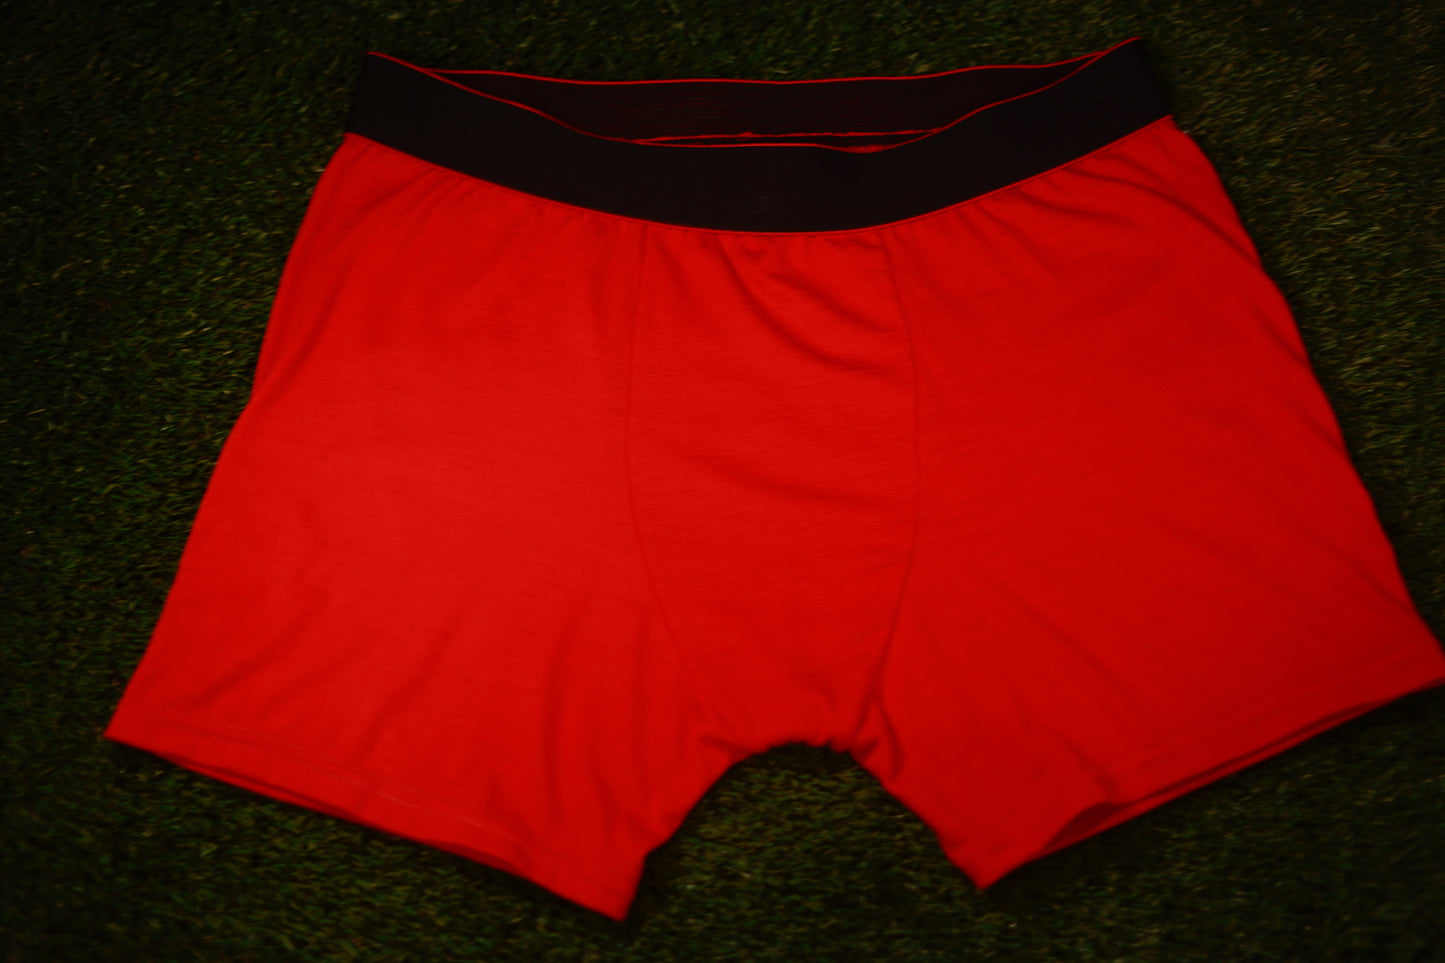 Red Merino Underwear from ELZI.